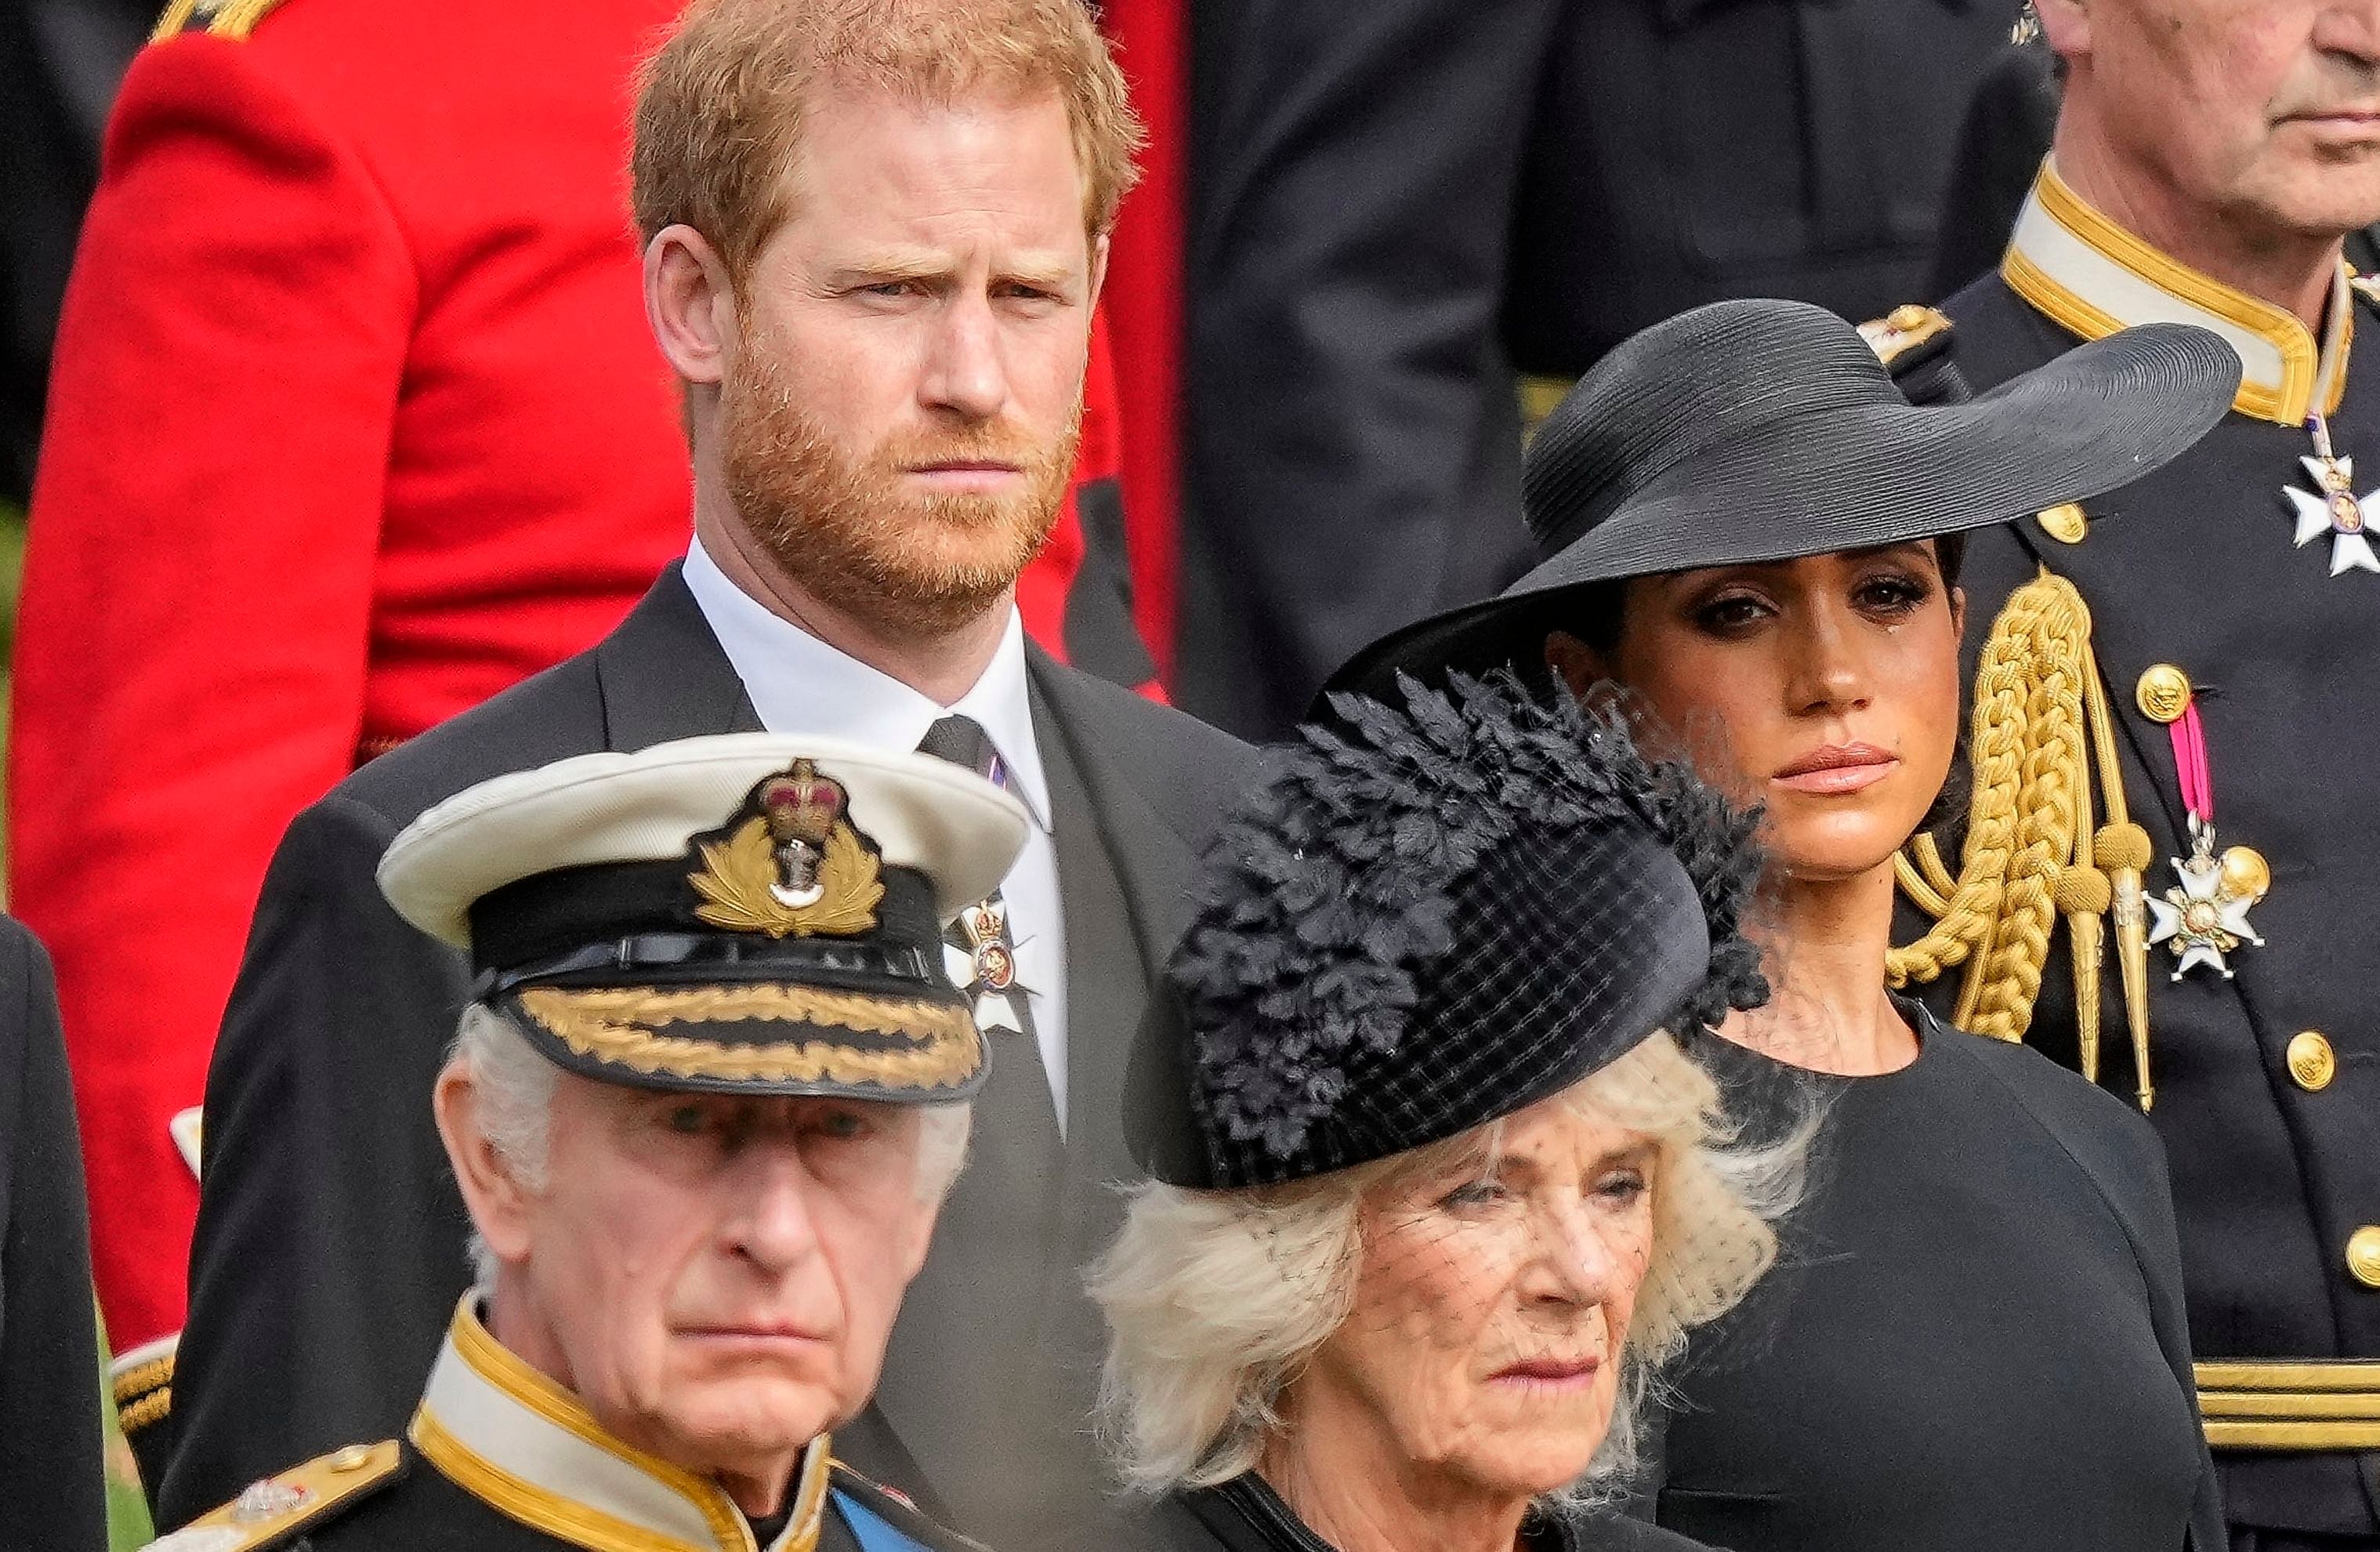 El Rey Carlos III apoyará a Harry en el reclamo de la custodia de sus hijos en caso de que se divorcie de Megan Markle
(AP Foto/Martin Meissner, Pool, Archivo)